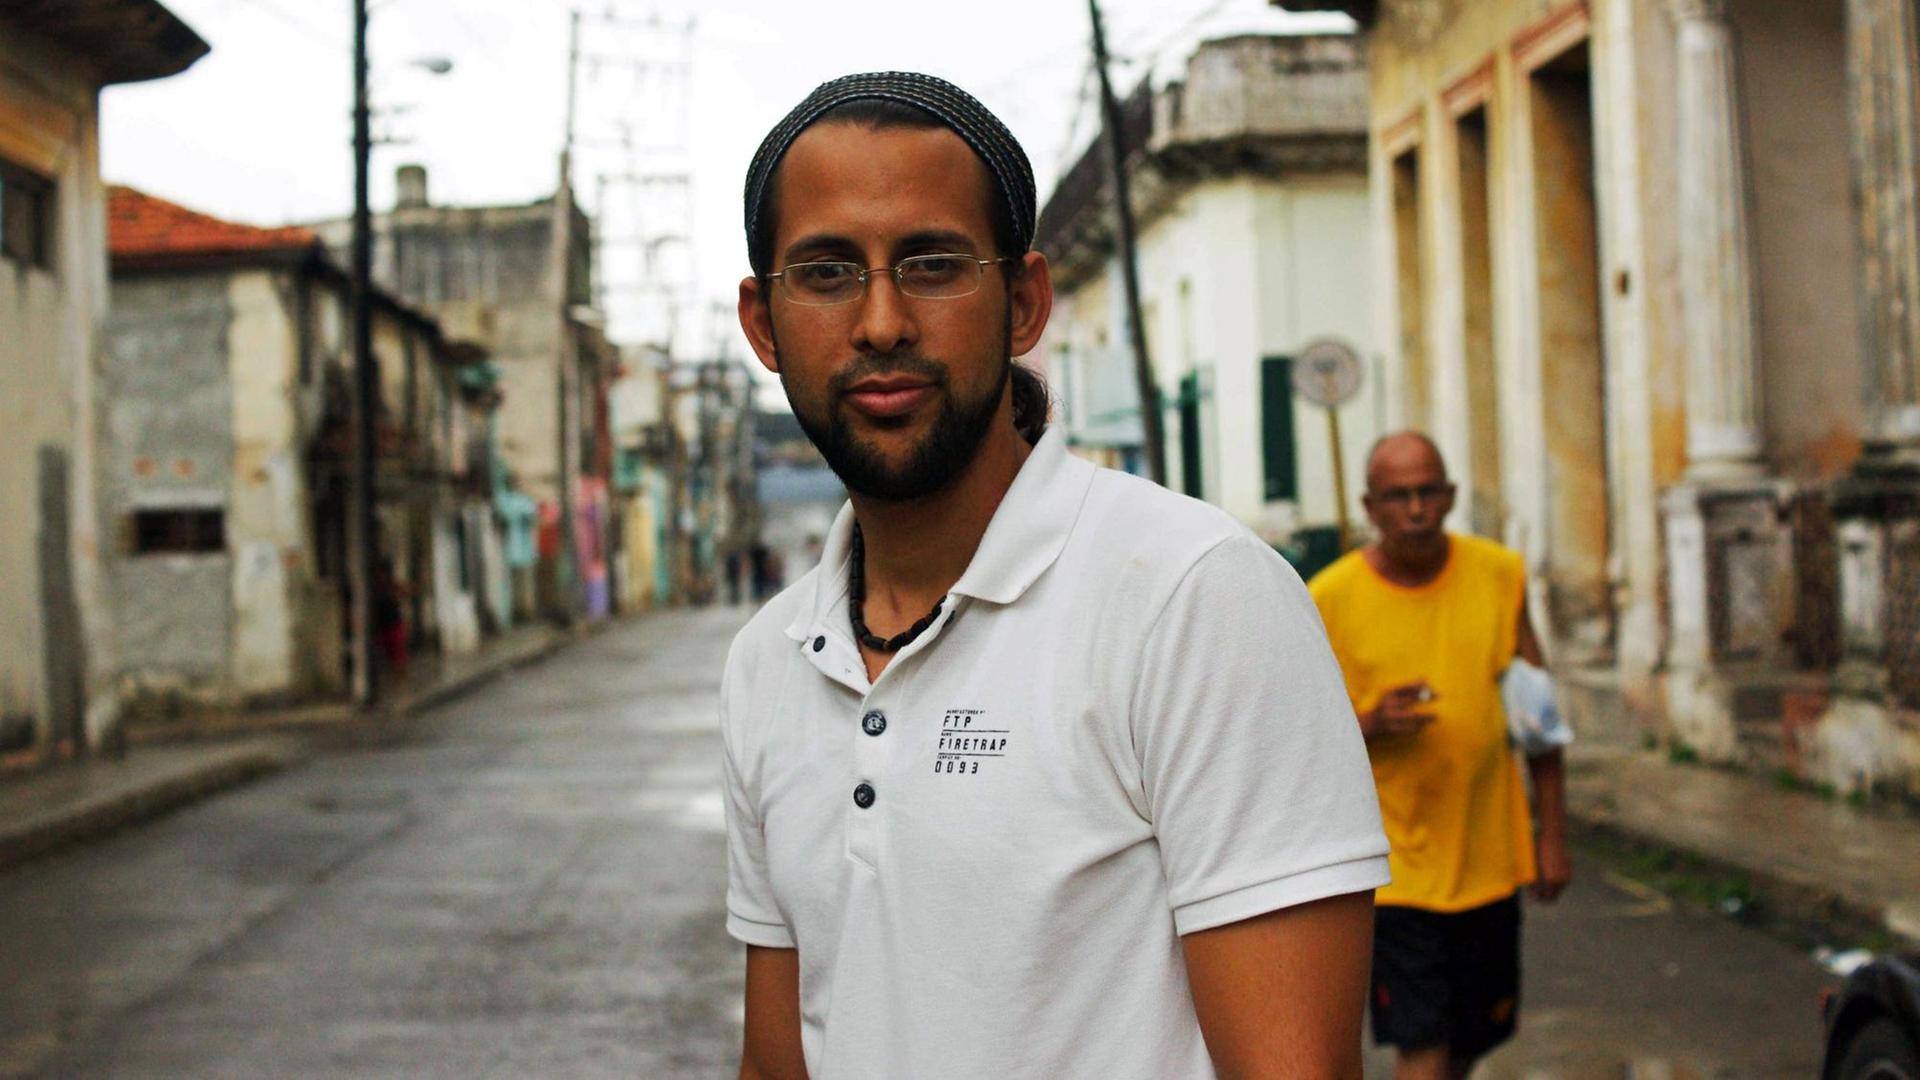 Ein junger Mann steht auf der Straße und schaut in die Kamera, Kuba